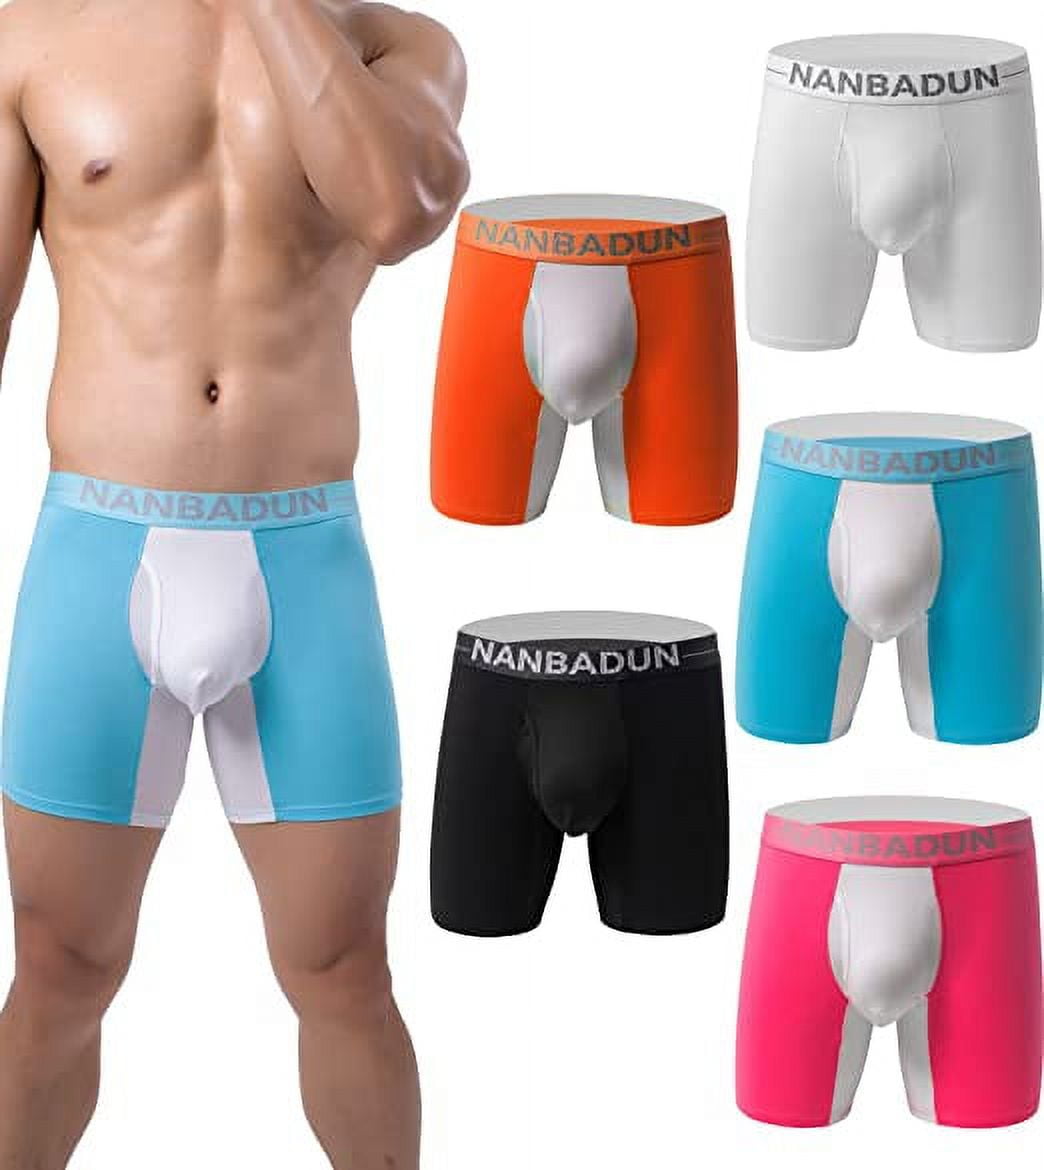 Tyhengta Men's Pouch Underwear Performance No Ride Up Boxer Briefs